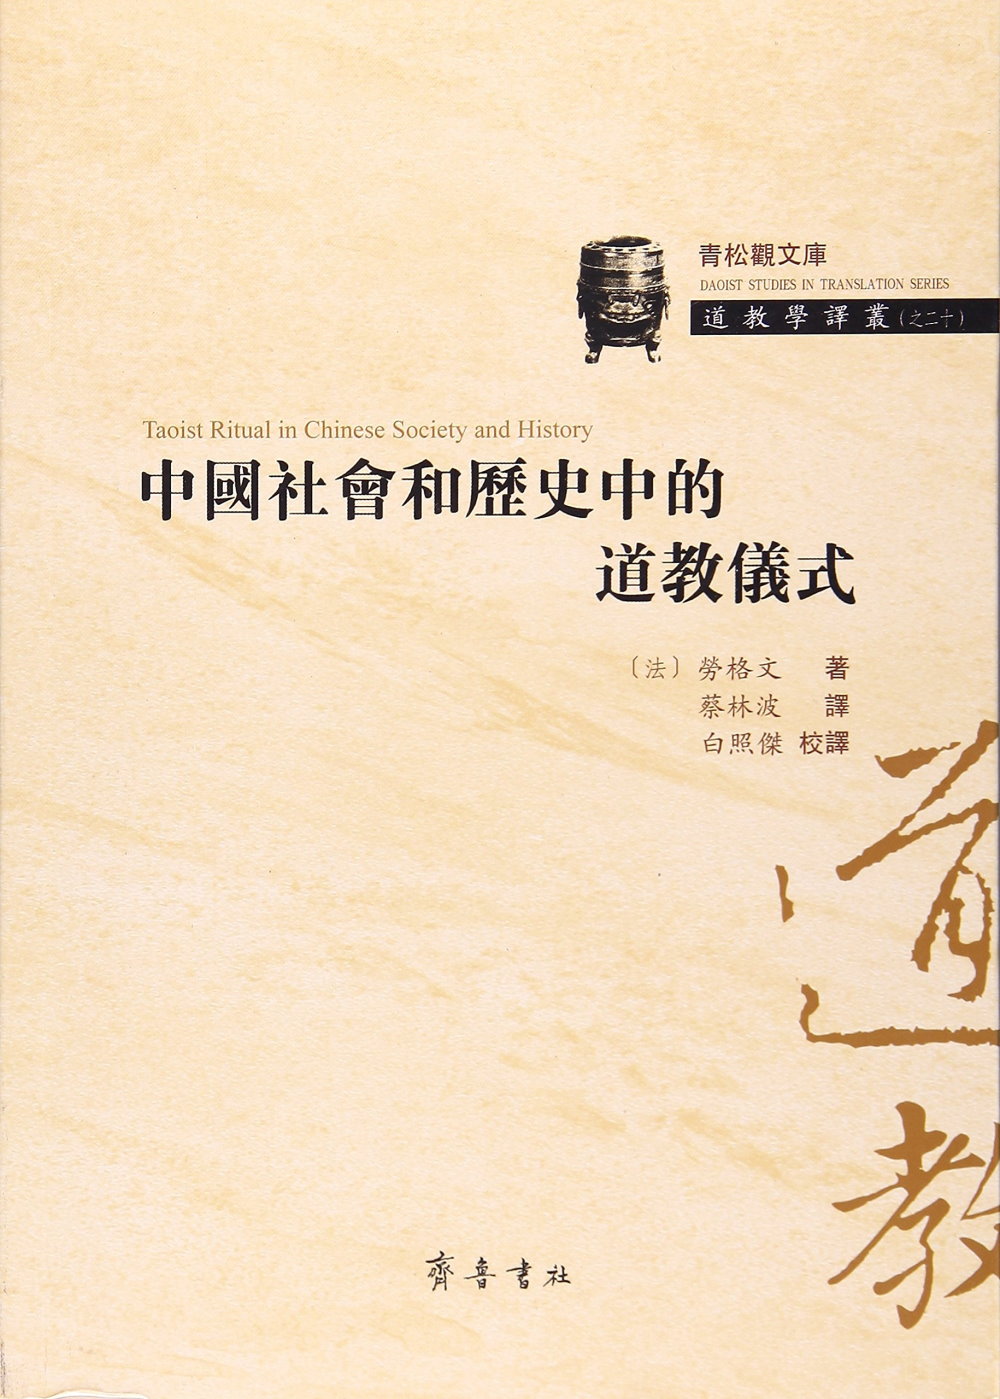 中國社會和歷史中的道教儀式